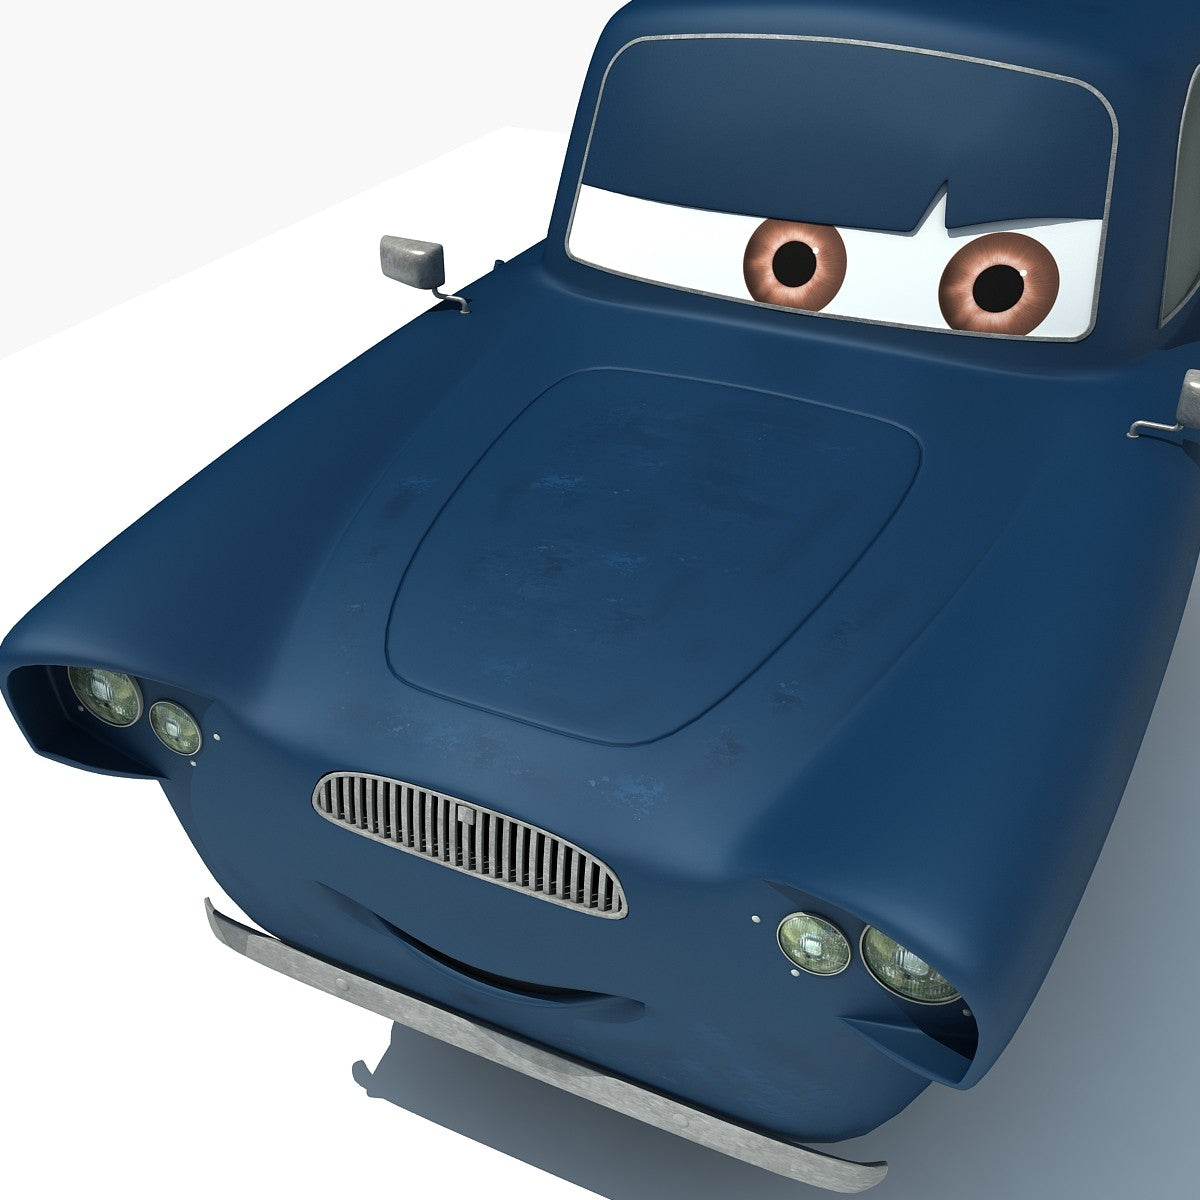 Disney Pixar Cars 2 3D Models